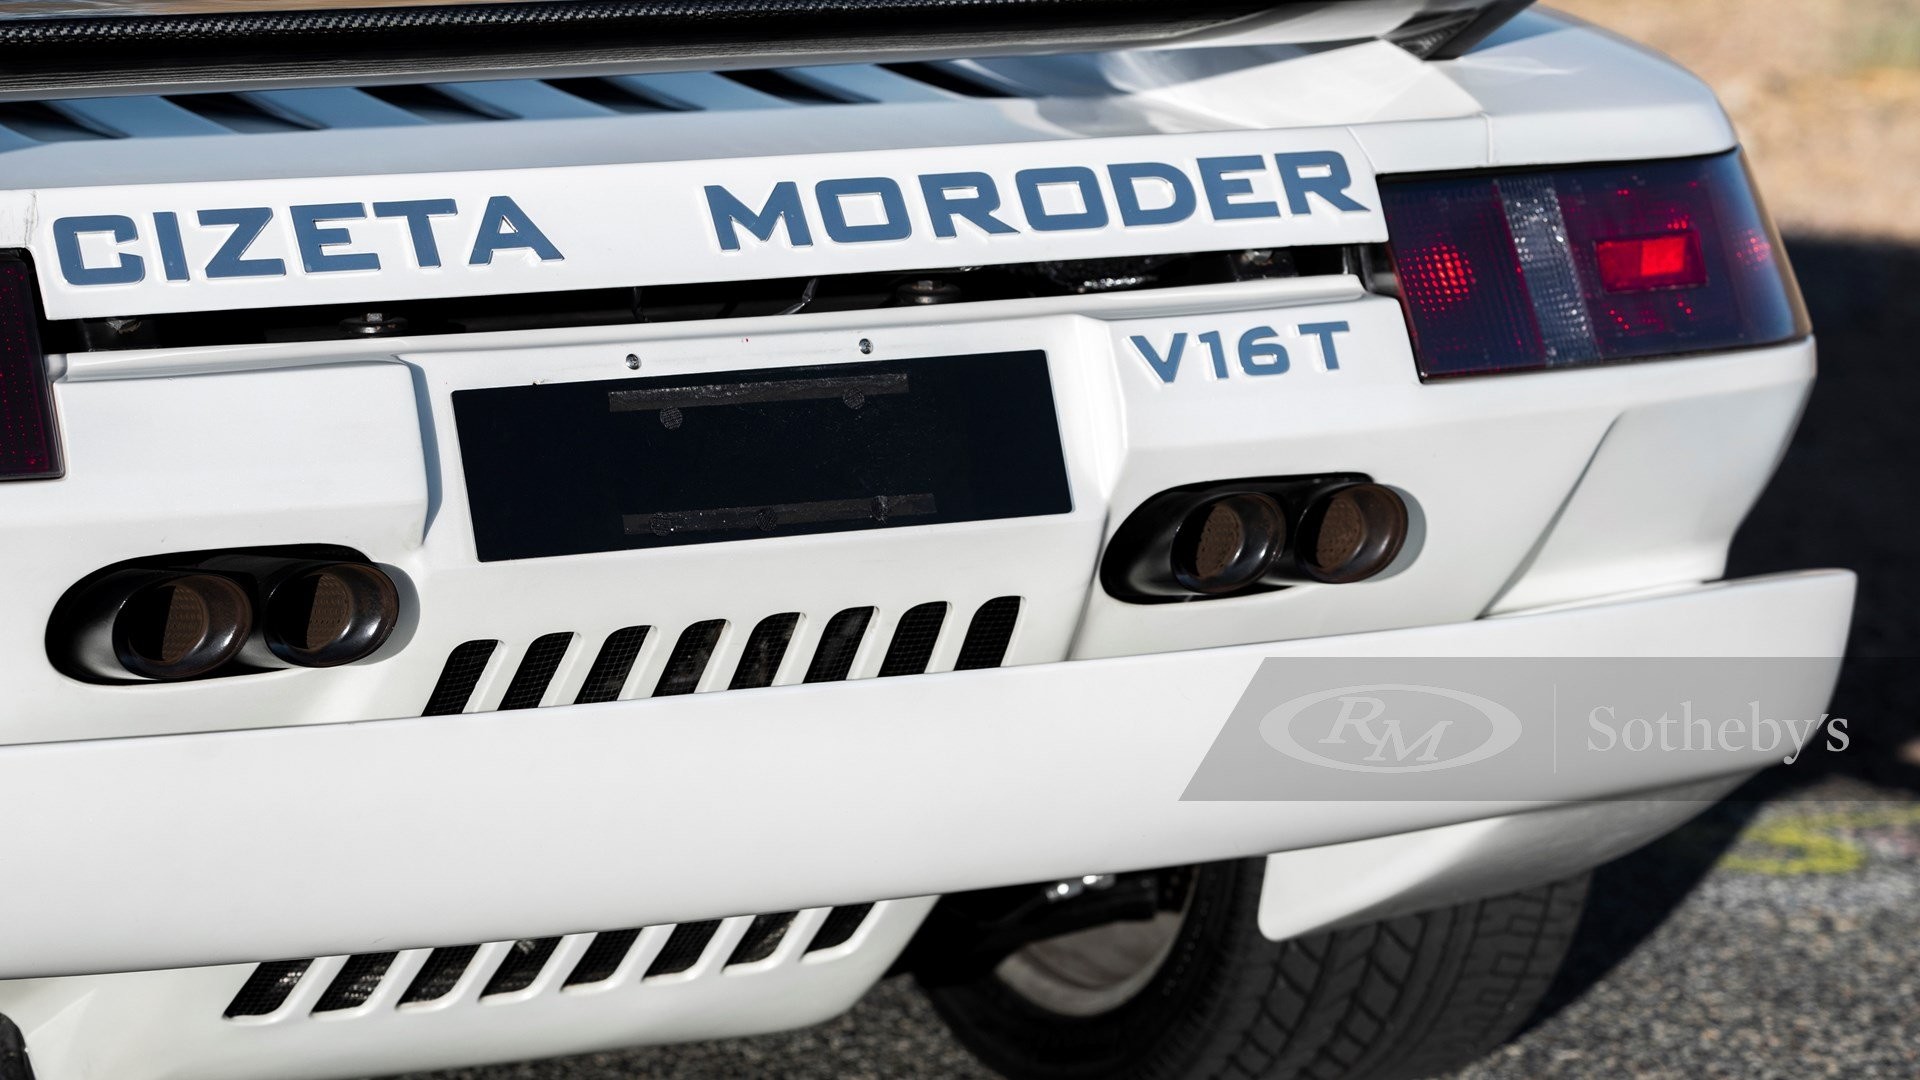 Первый экземпляр экзотического суперкара Cizeta-Moroder V16T